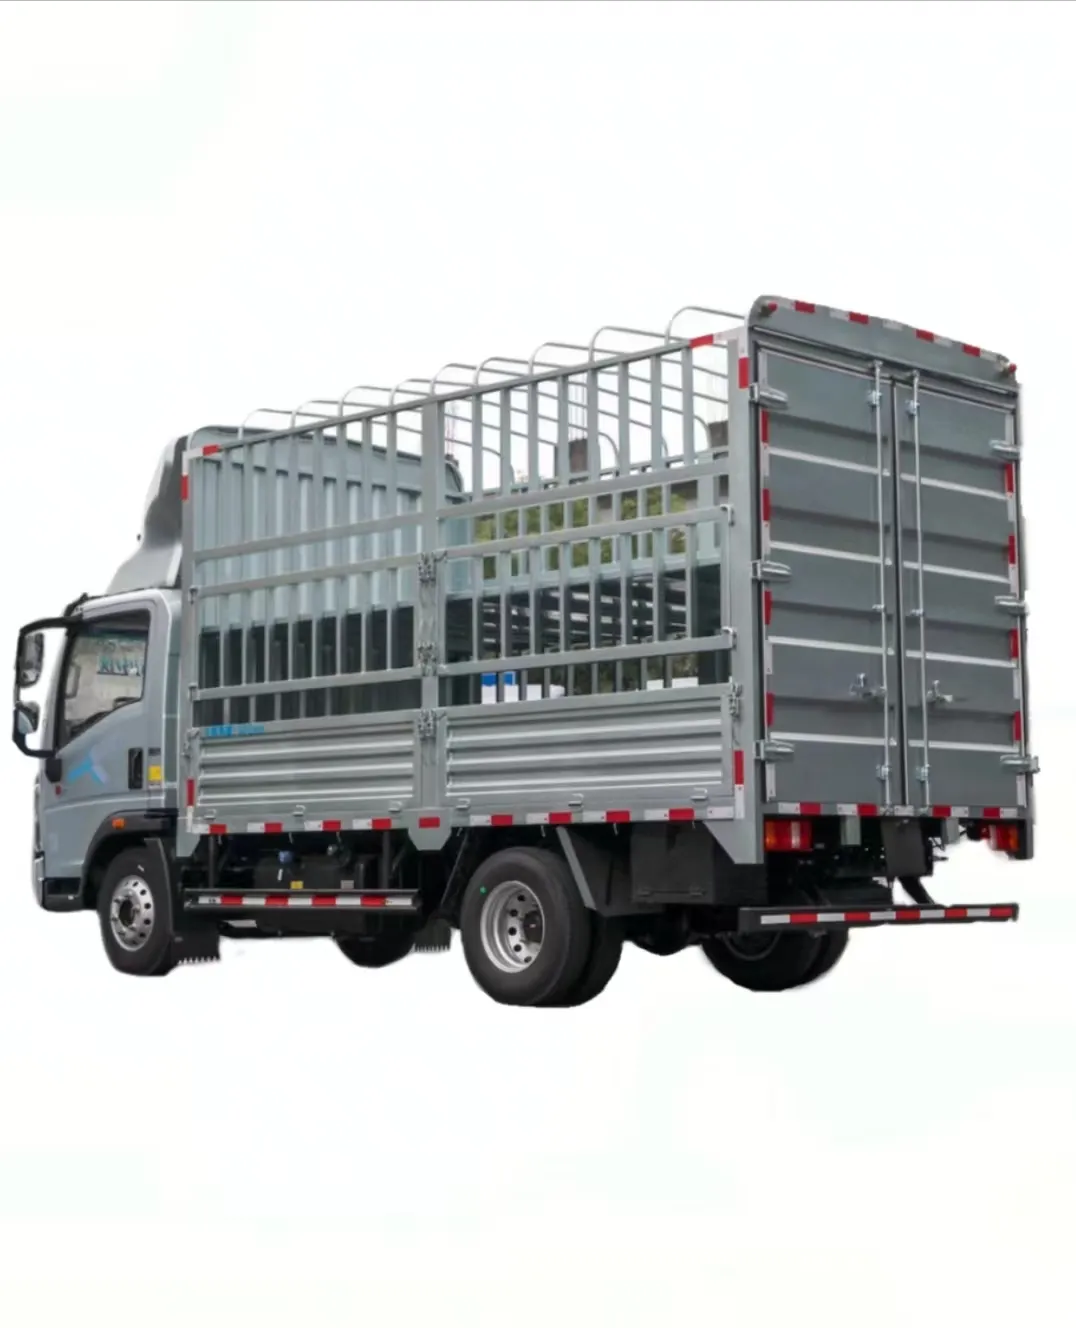 Hot Sale China Trucksbrand Nieuwe Lichte Truckshow Nieuwe Trucksgrote Ruimte Magazijn Lichte Vrachtwagens